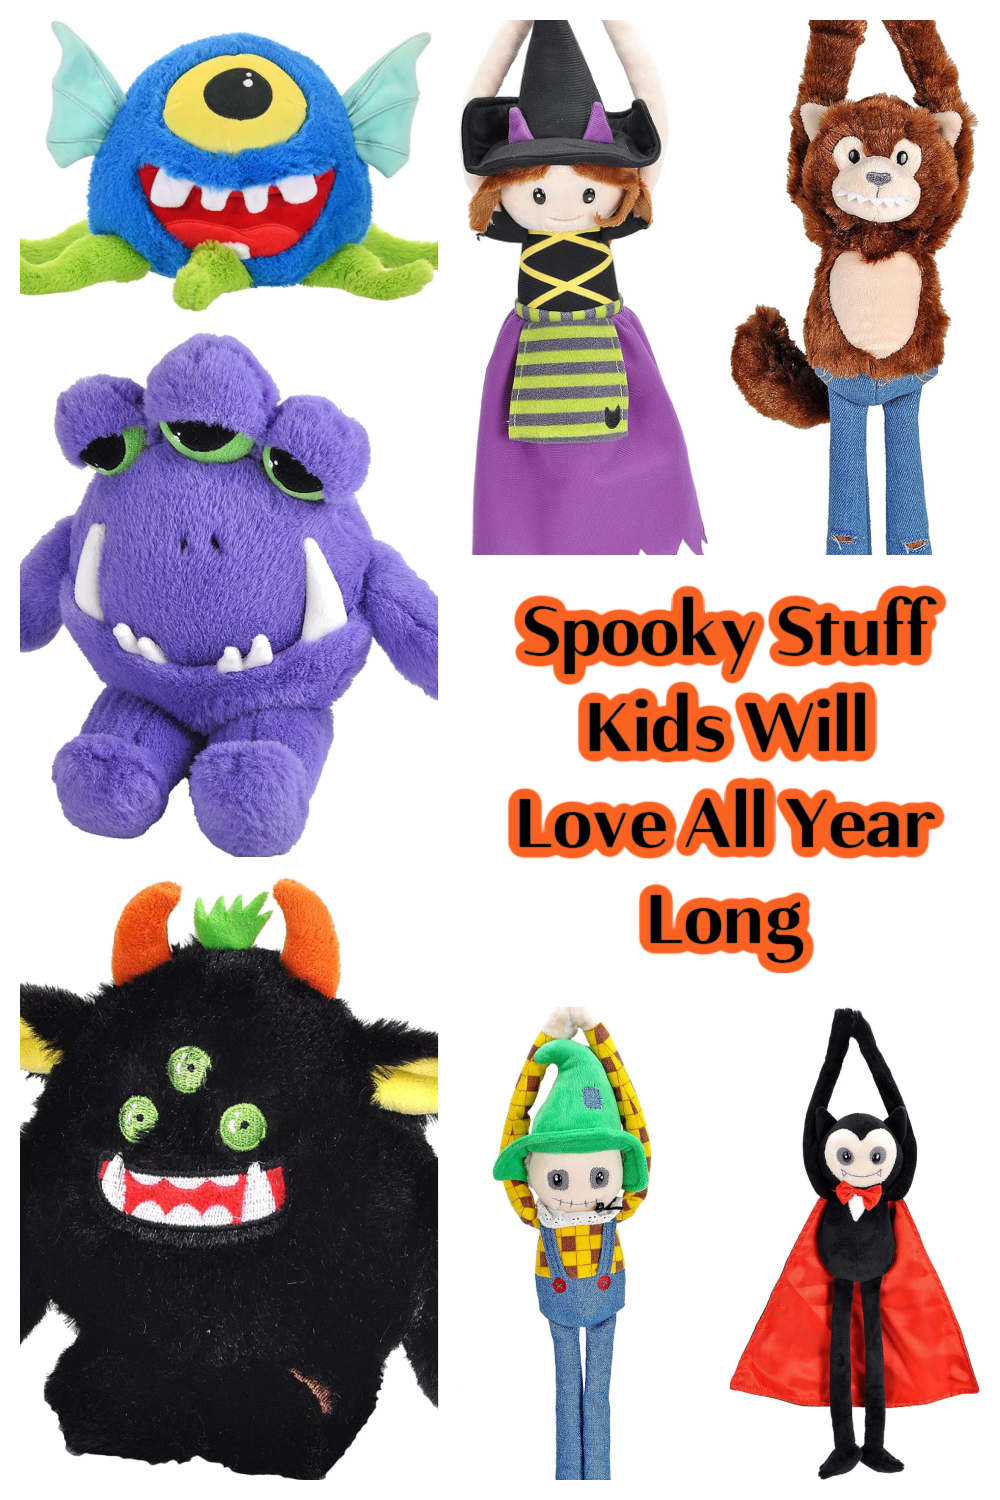 Spooky Stuff Kids Will Love All Year Long